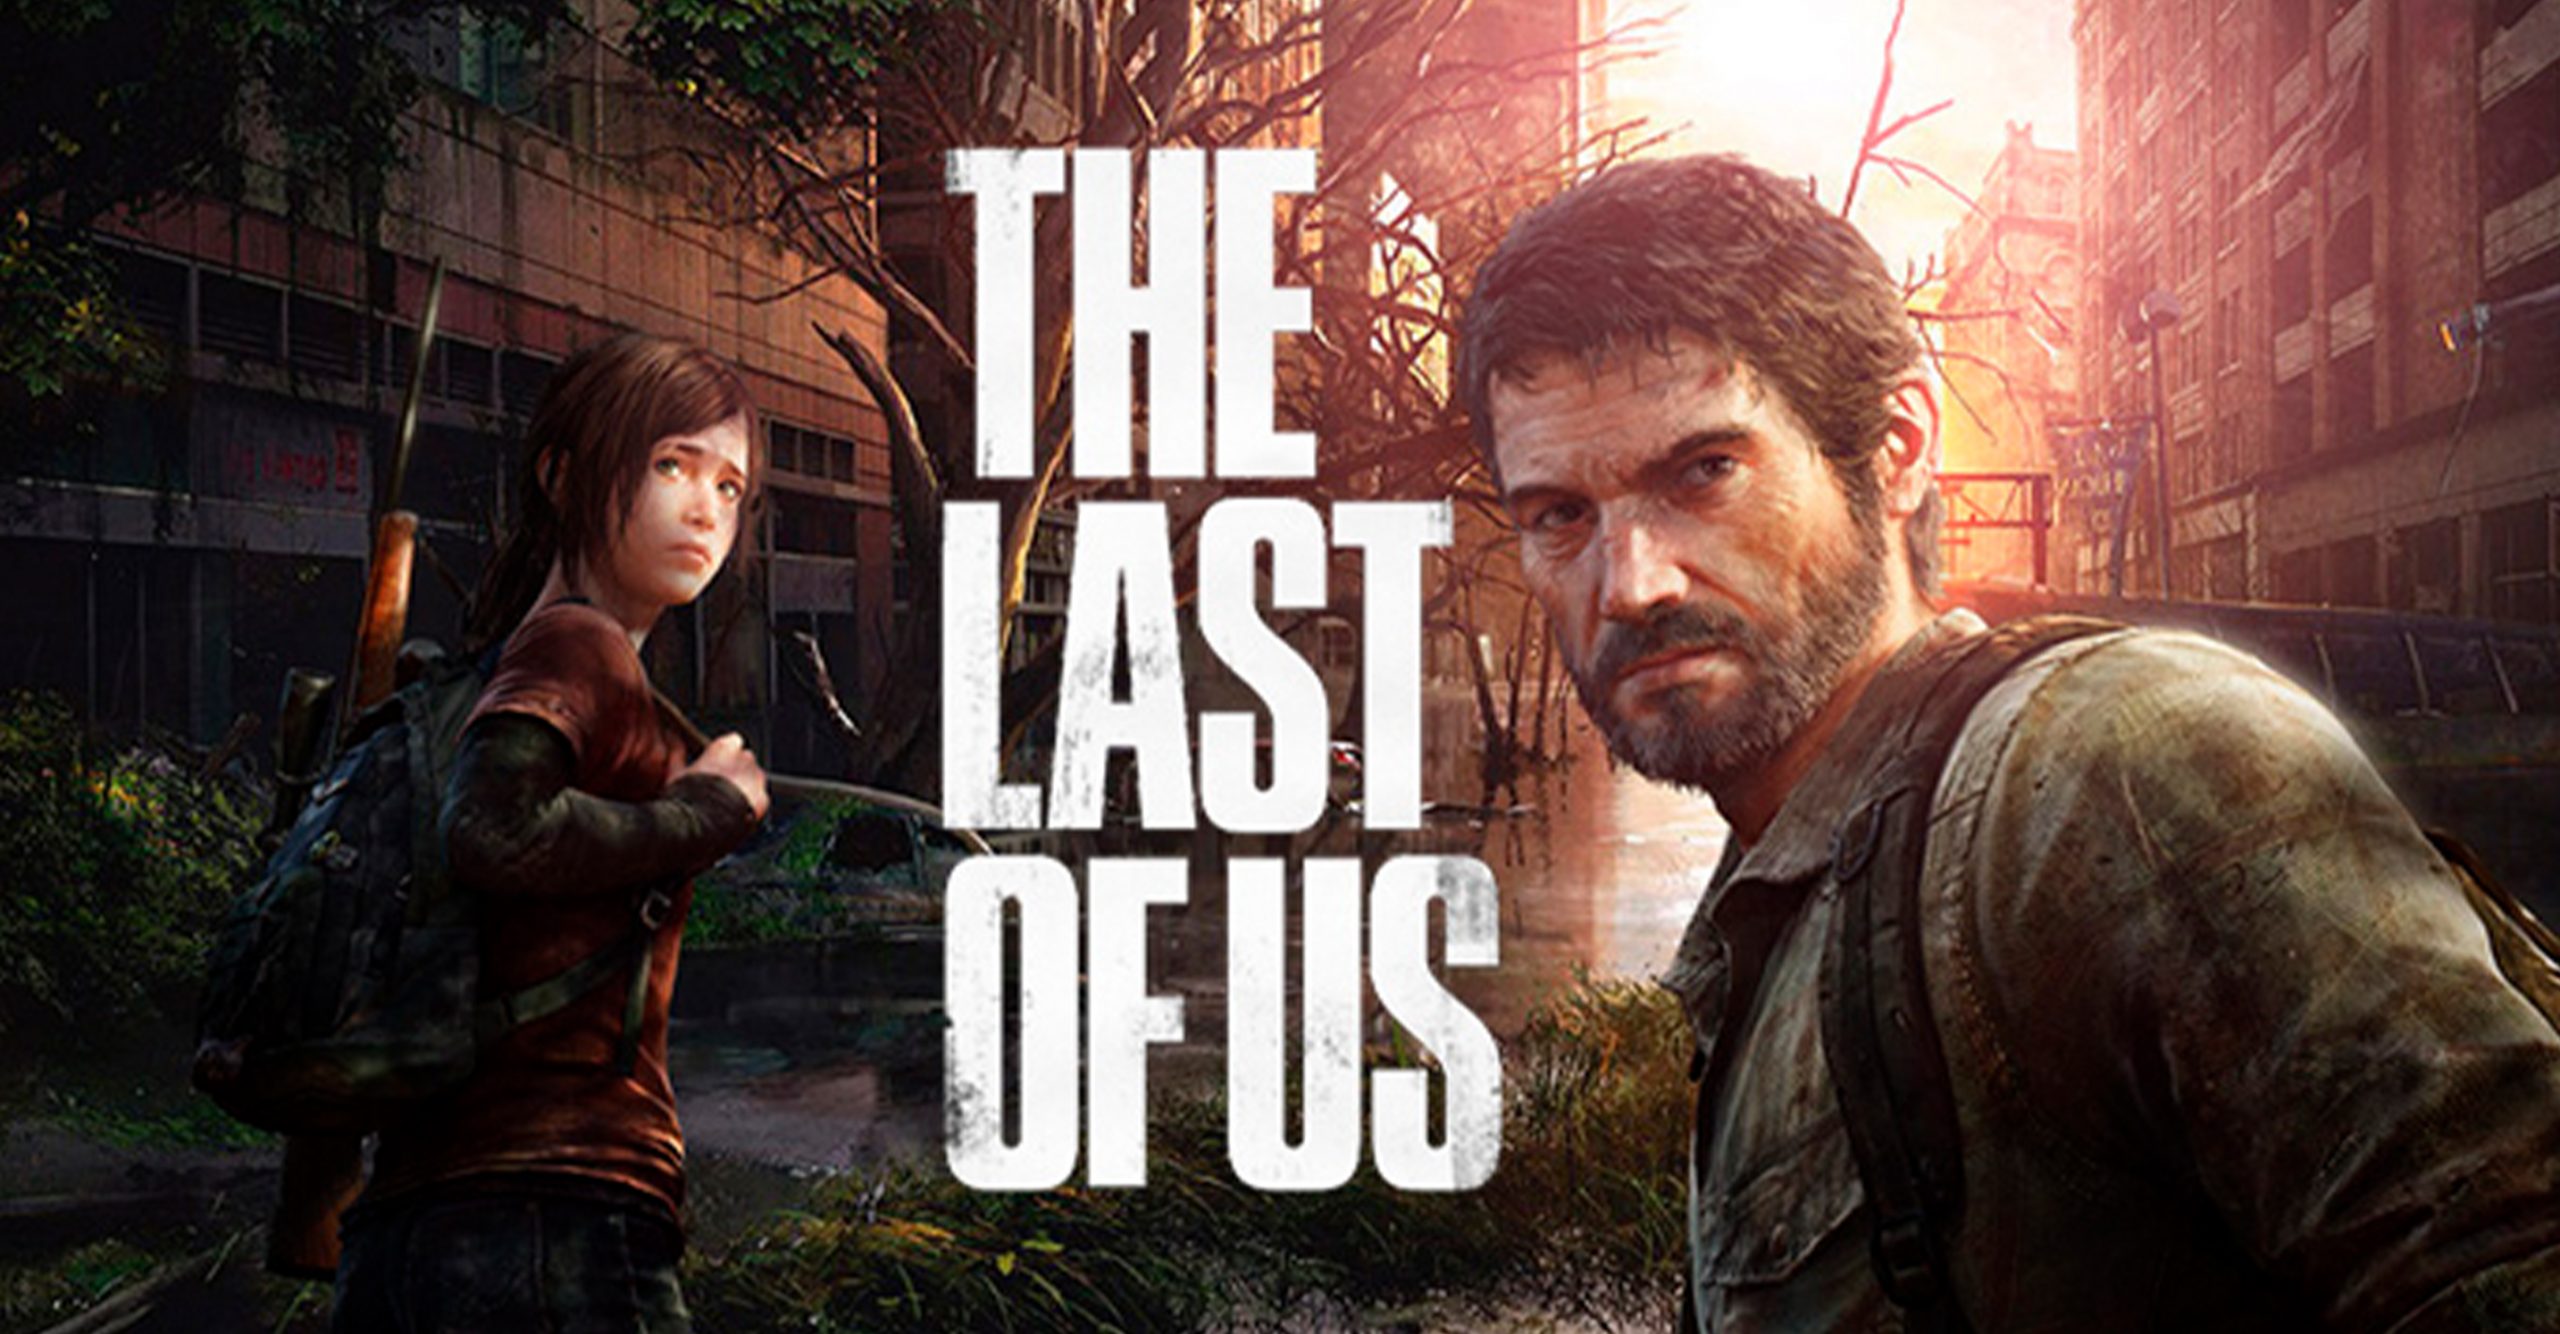 Série The Last of Us deve ser lançada apenas em 2023